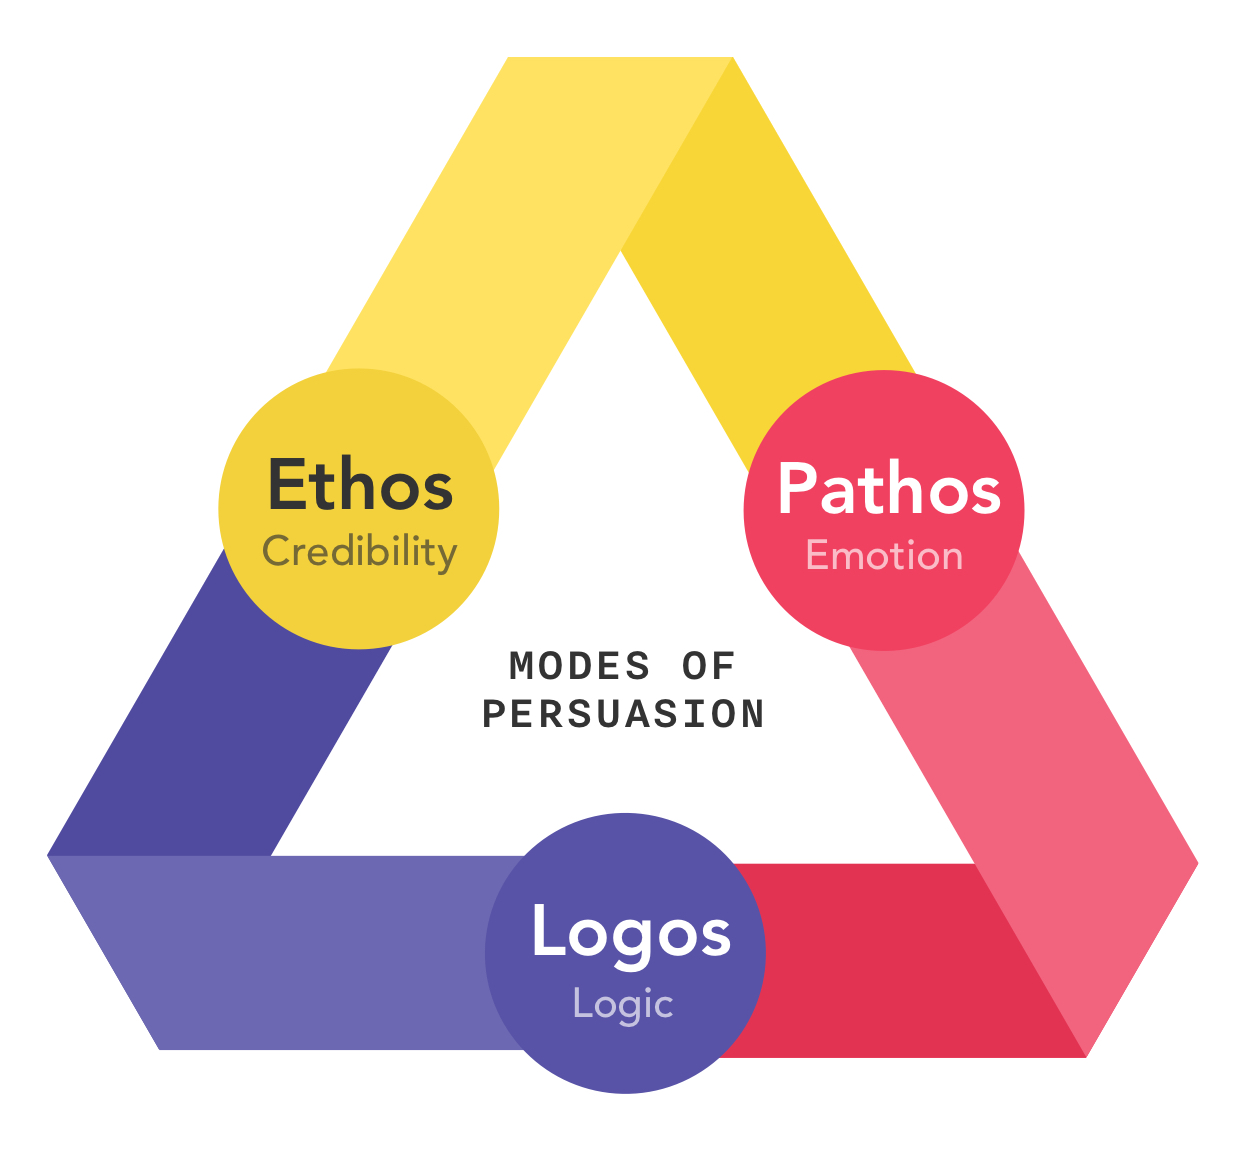 Modes of Persuasion: Ethos, Pathos, Logos